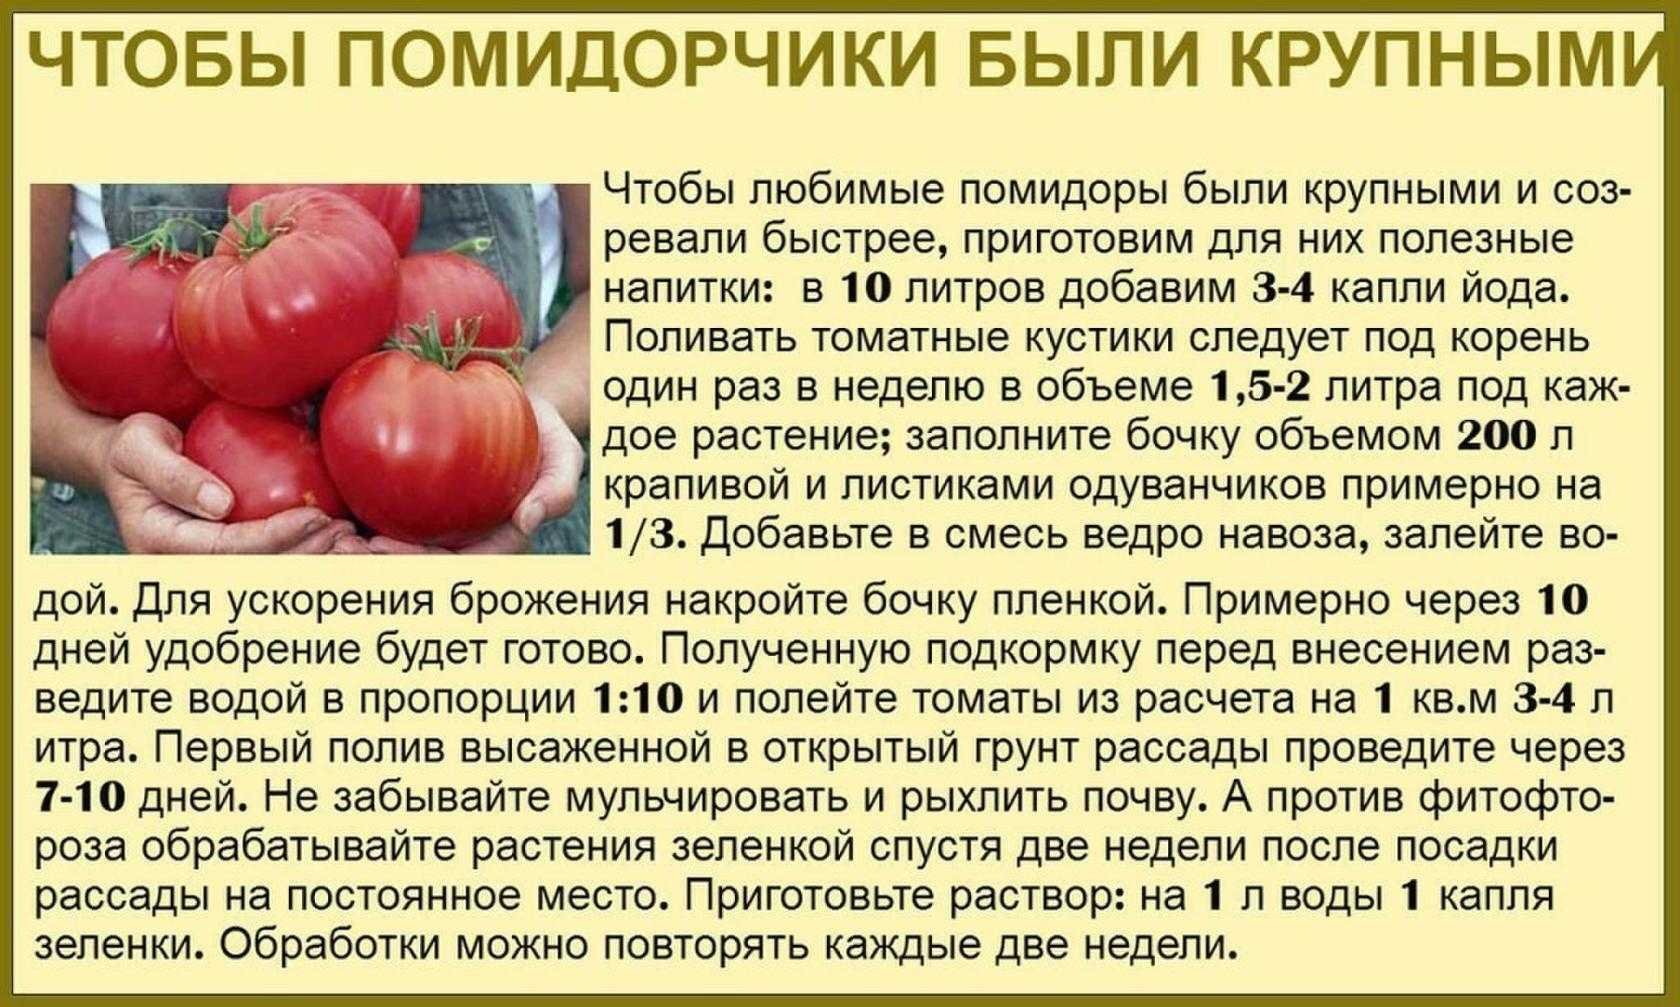 Сколько литров томата. Таблица подкормки томатов. Советы садоводам и огородникам. Советы про томаты. Сад огород полезные советы томаты.